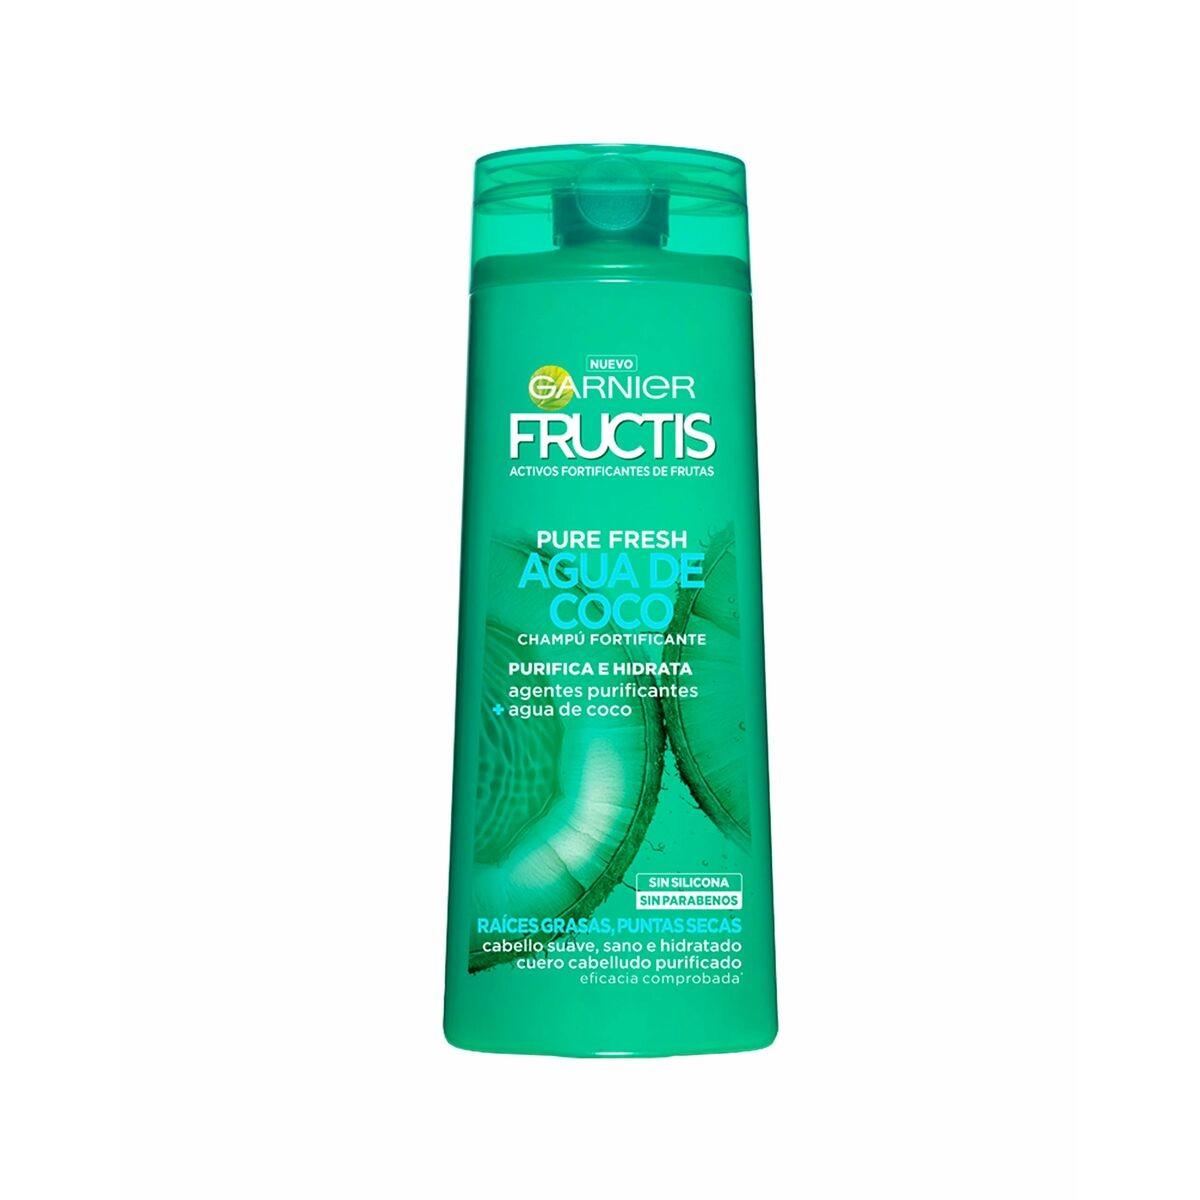 Billede af Styrkelse af shampoo Garnier Fructis Pure Fresh Kokosvand 300 ml